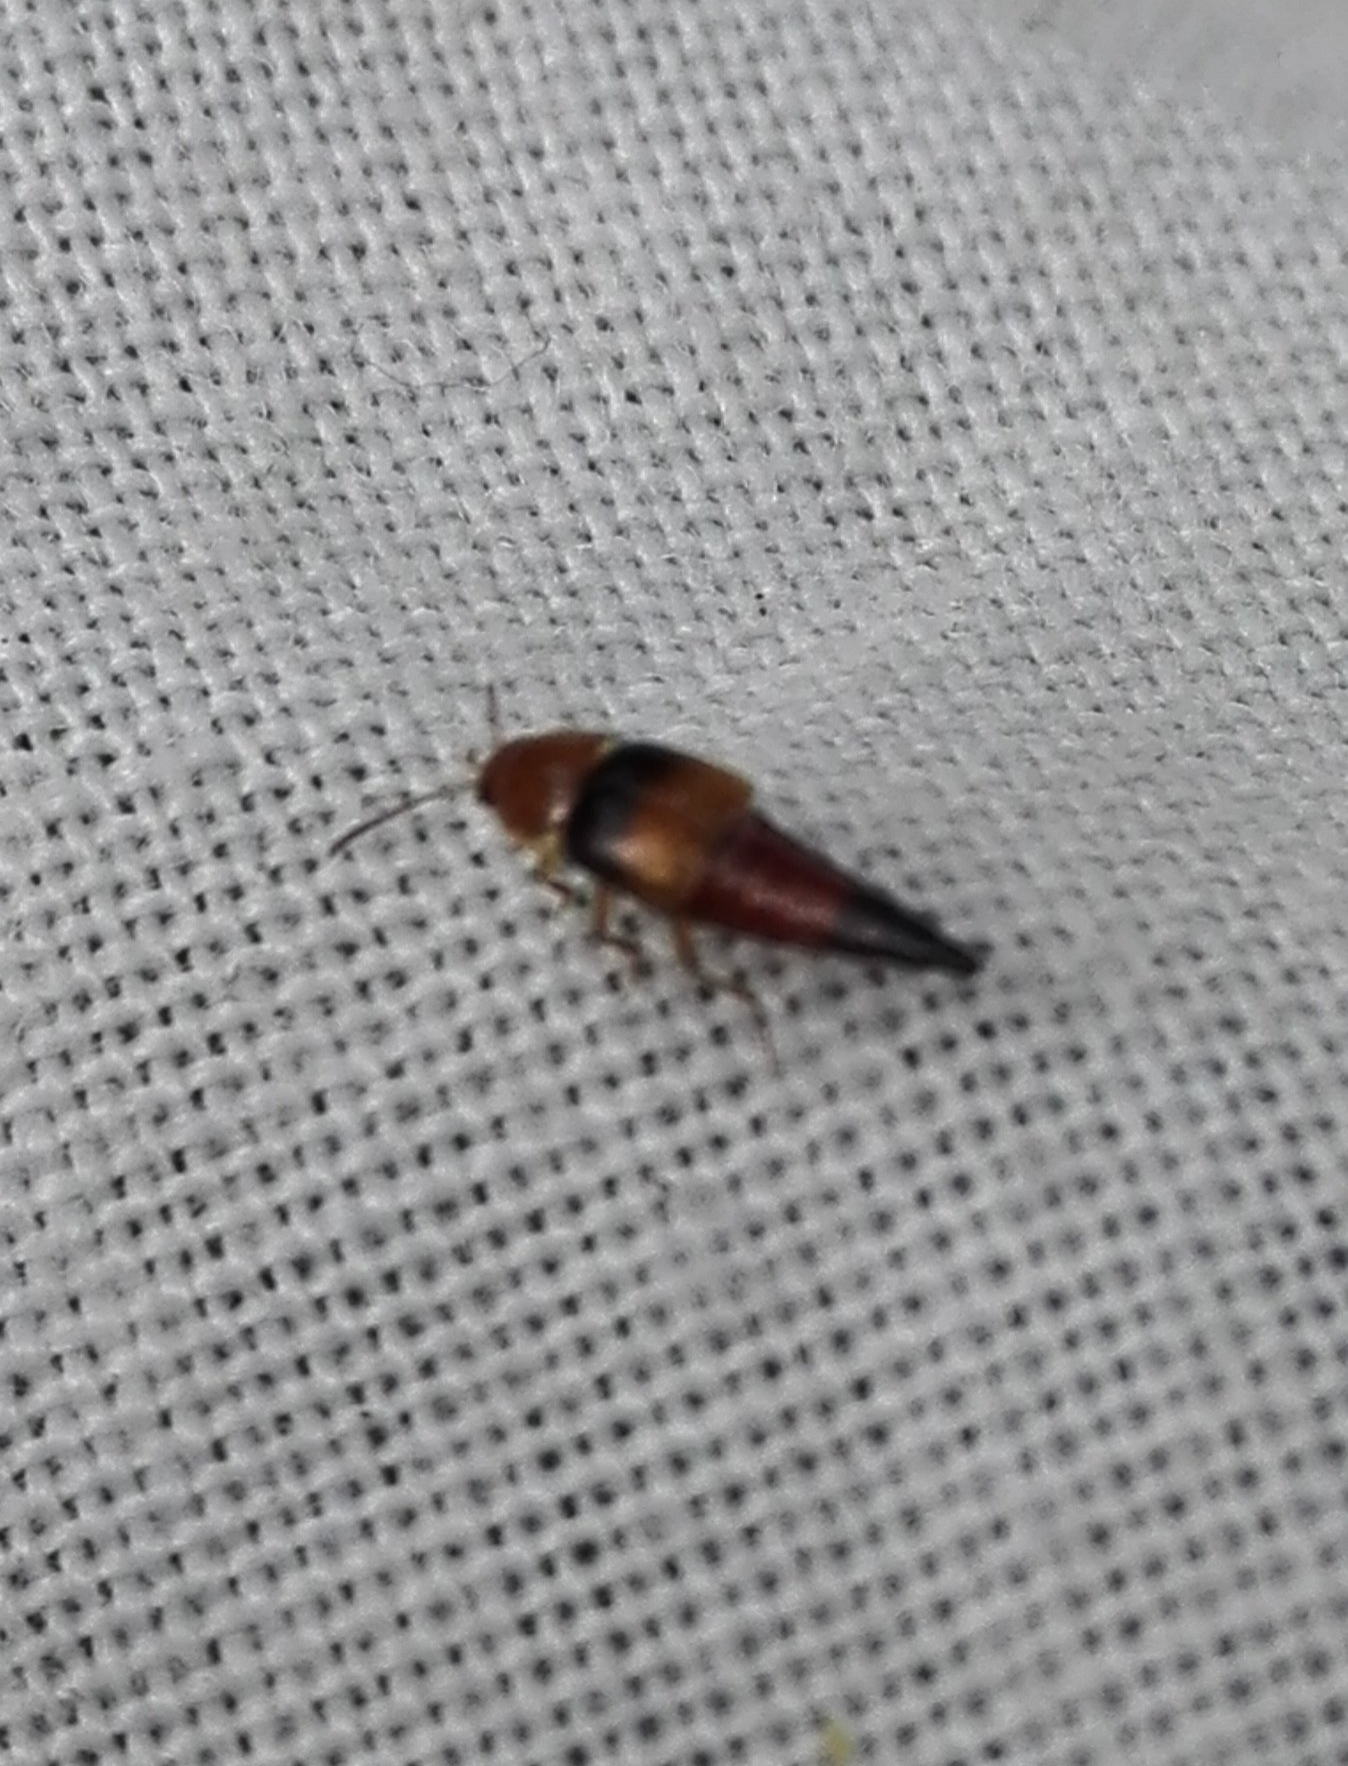 #170 Tachyporus obtusus Rove beetle